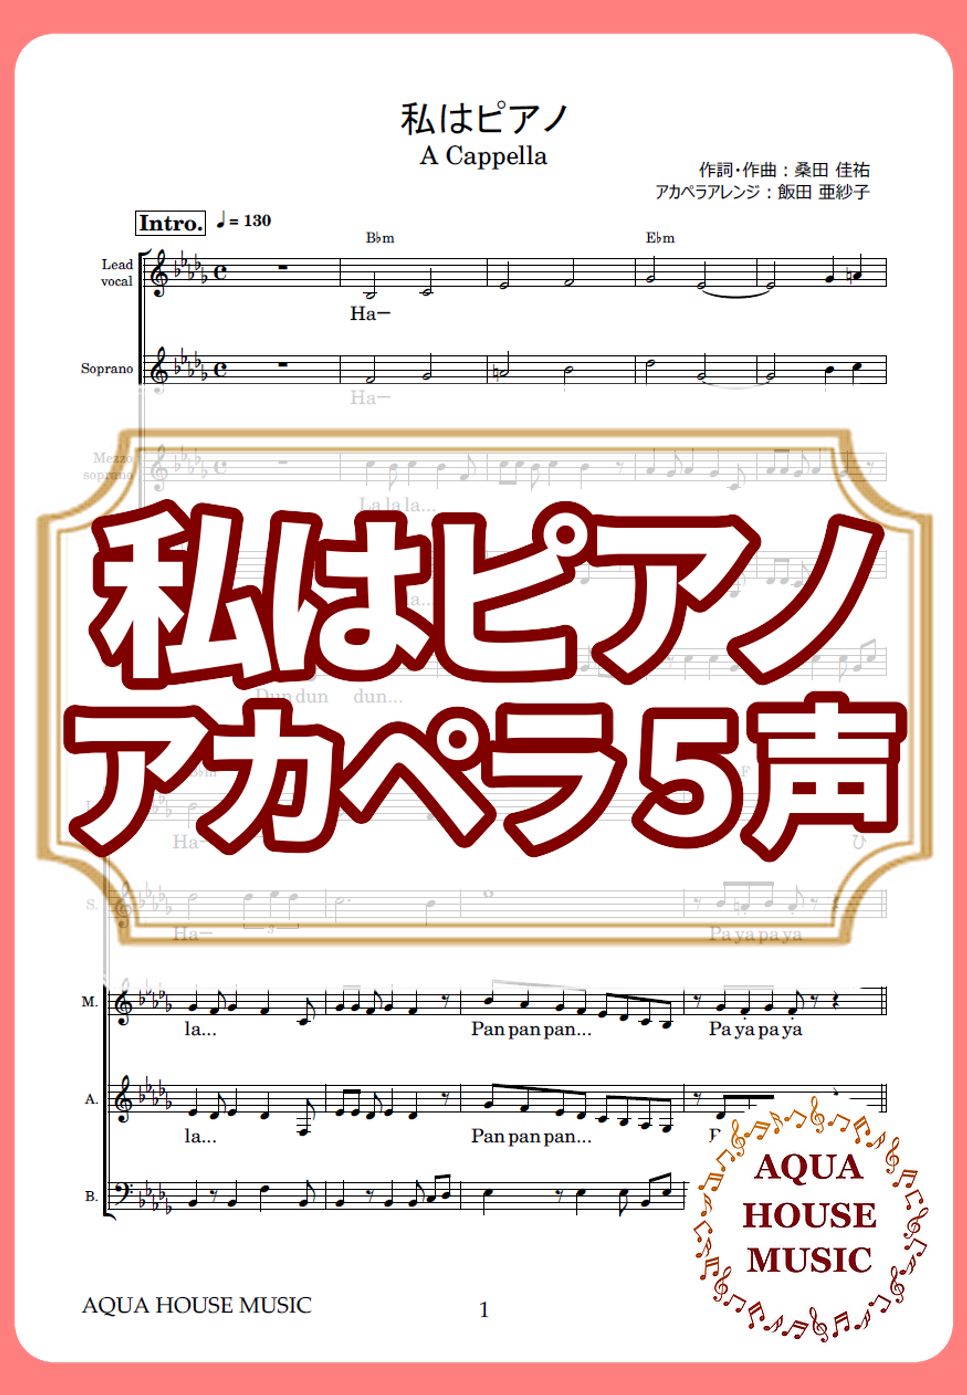 高田 みづえ - 私はピアノ (アカペラ楽譜♪５声ボイパなし) by 飯田 亜紗子